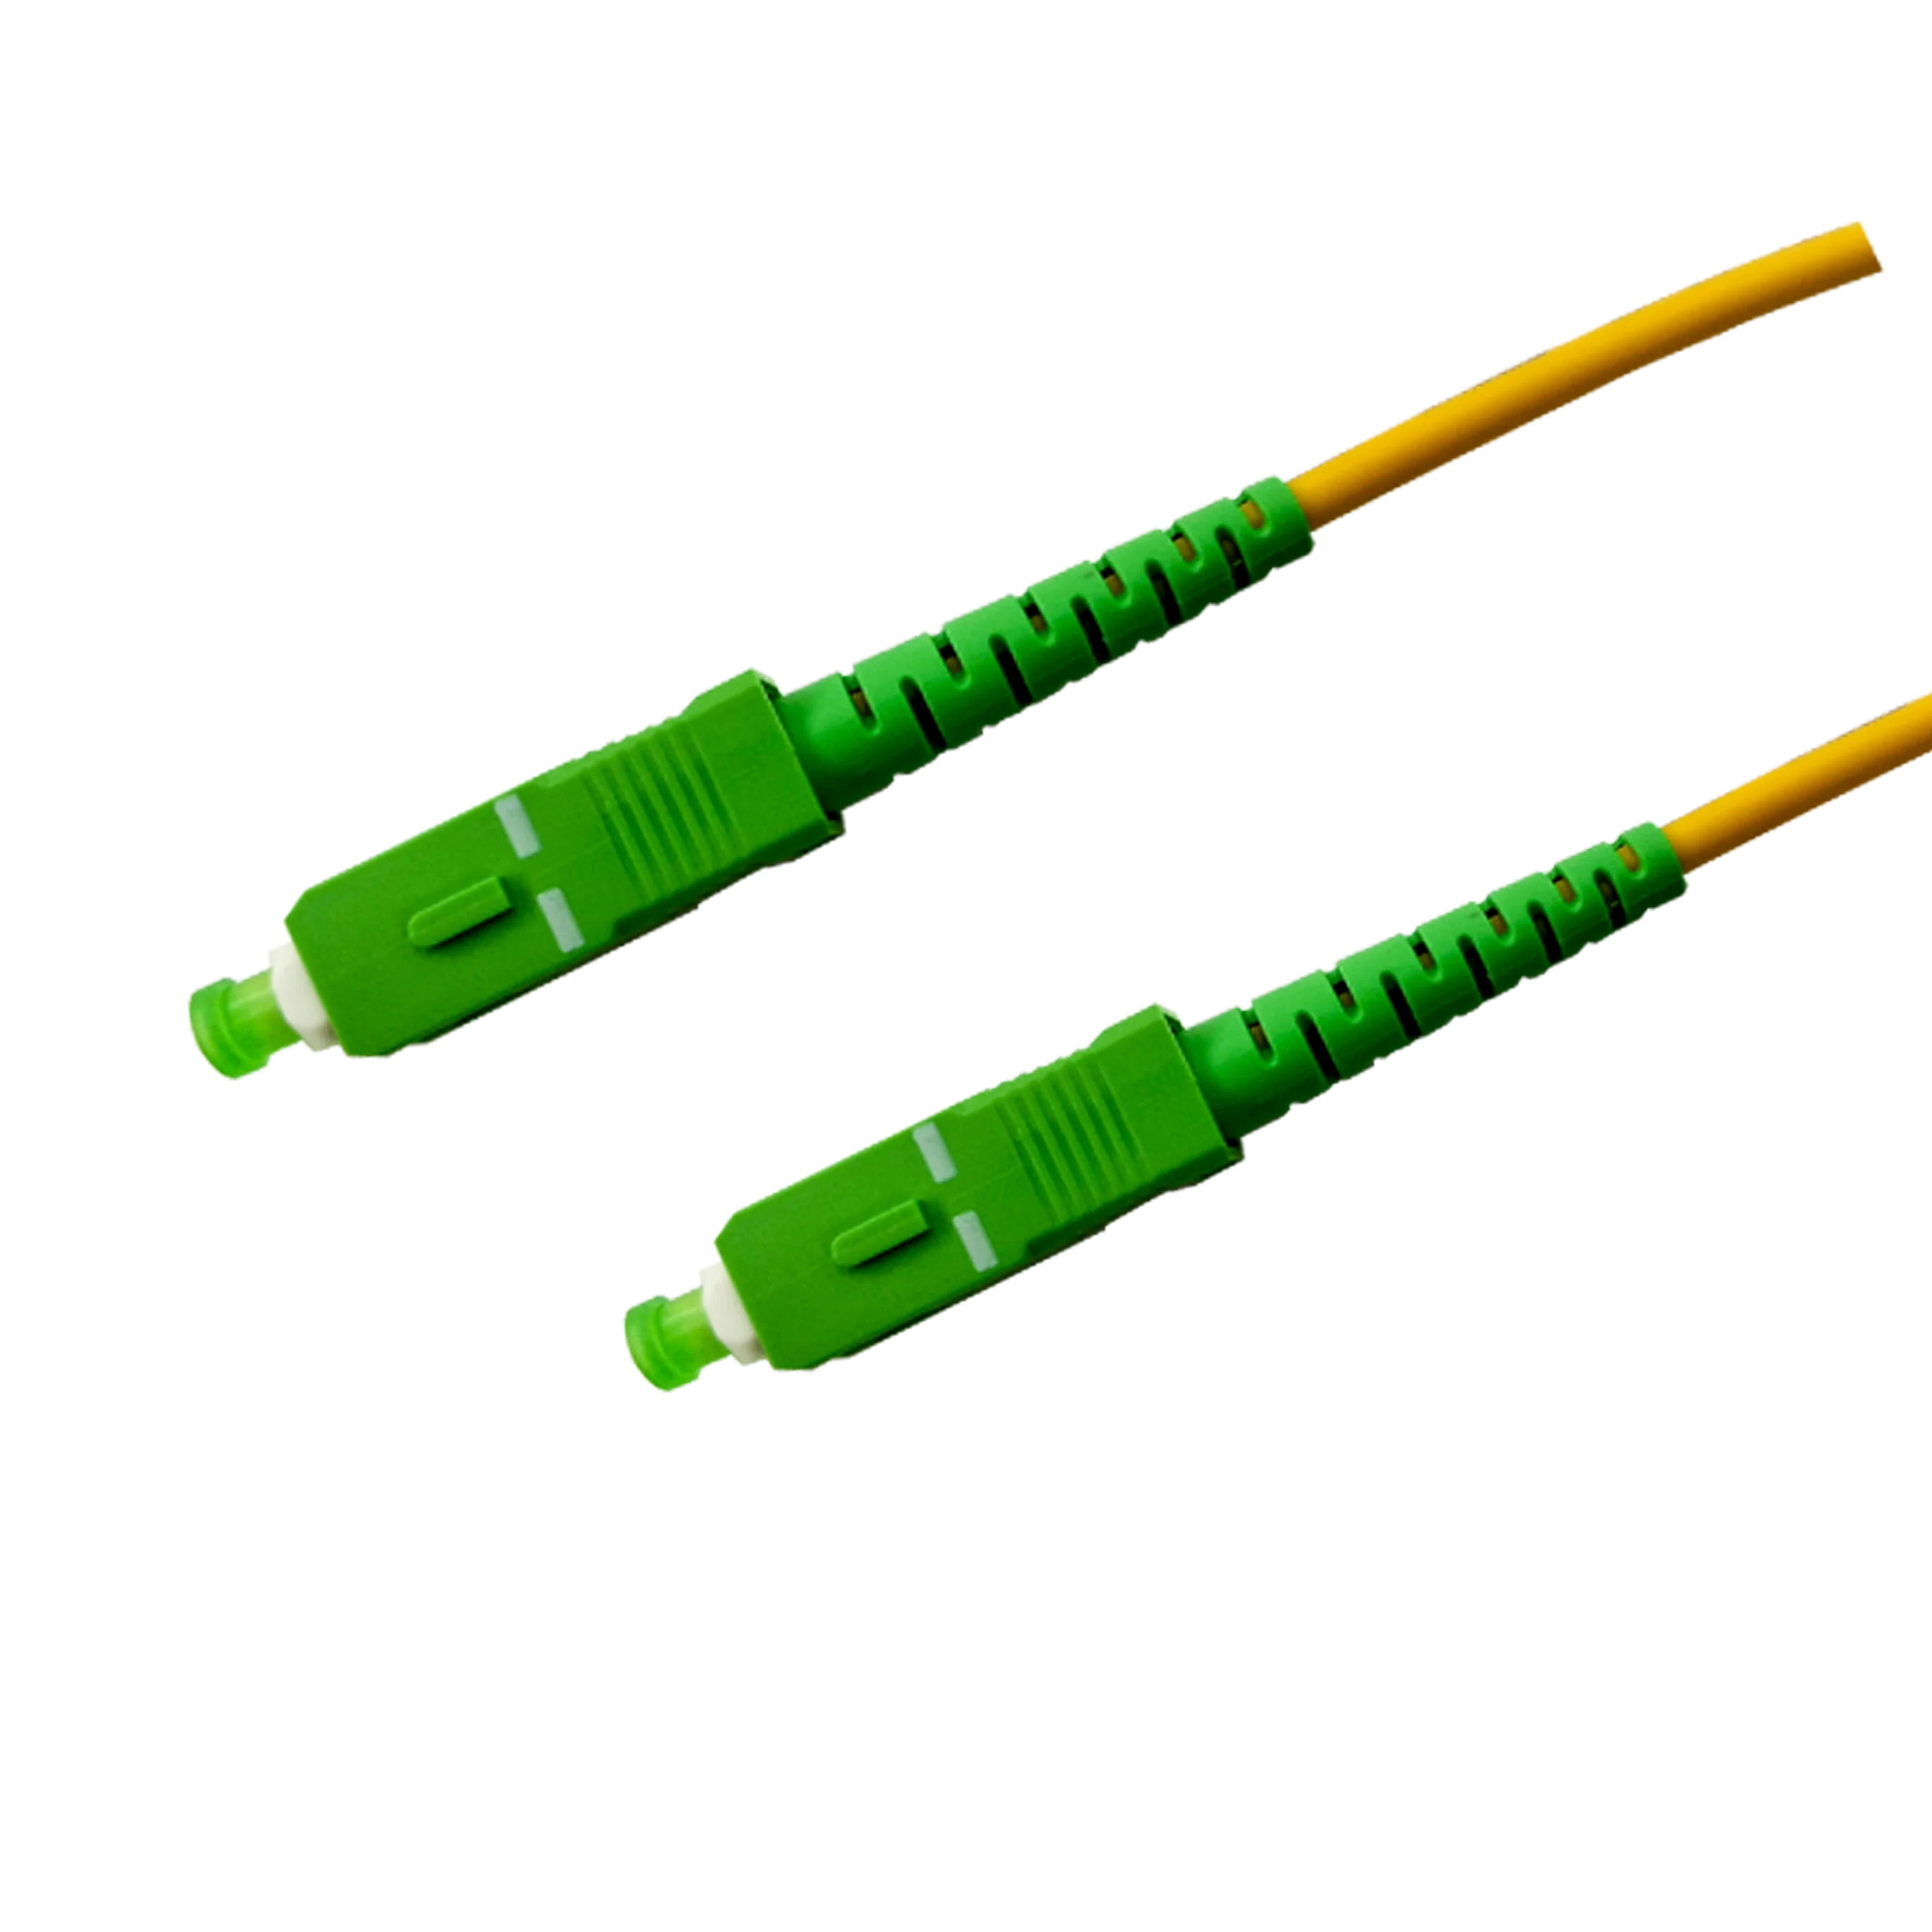 Fiber optic cable connectors